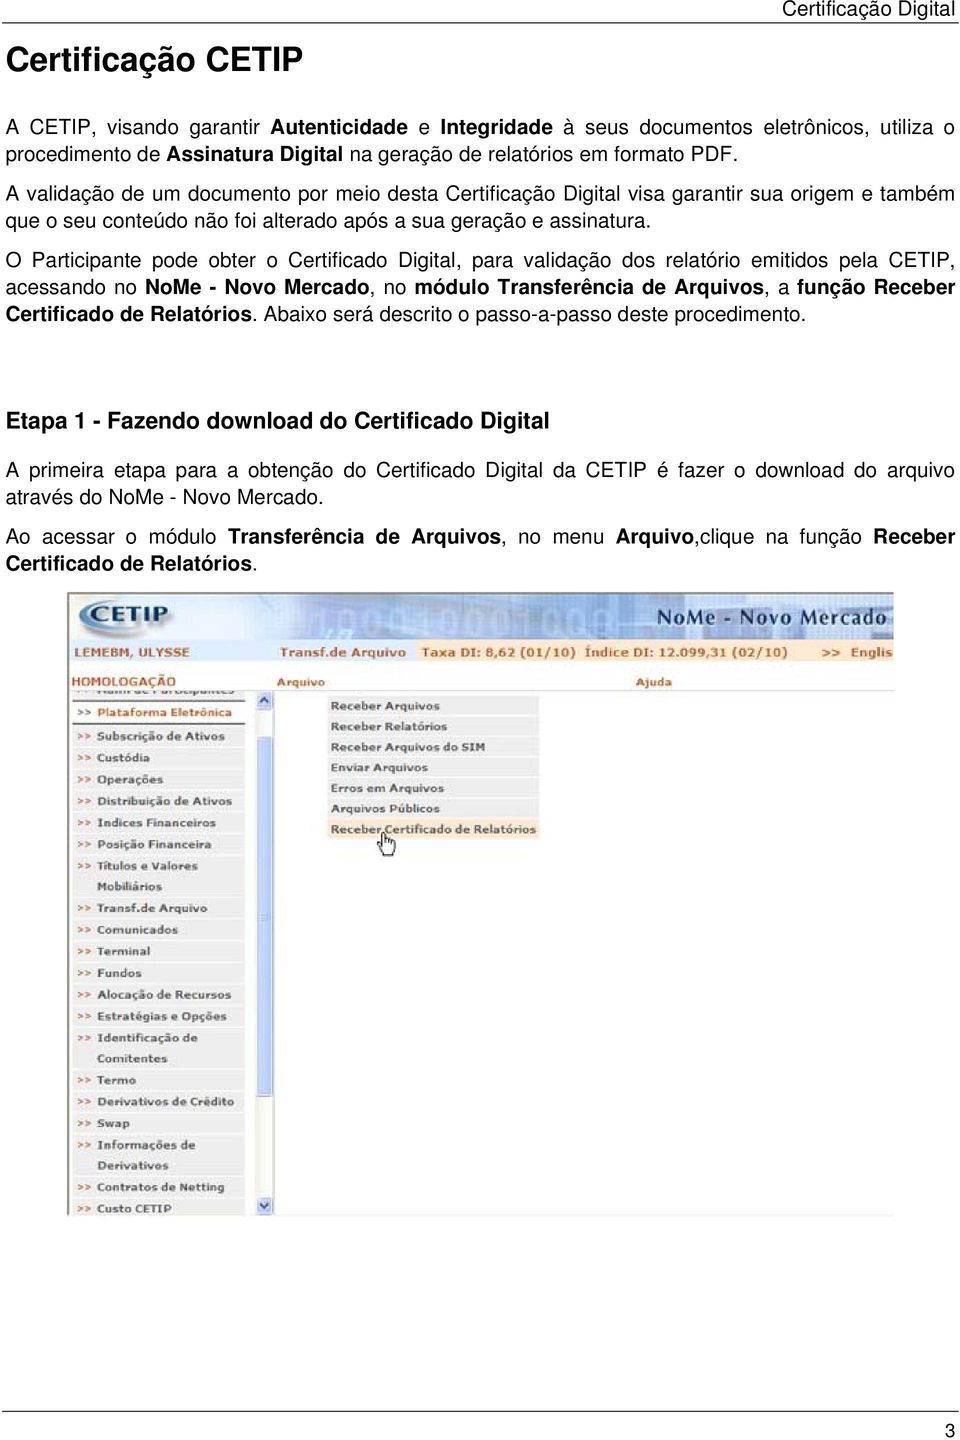 O Participante pode obter o Certificado Digital, para validação dos relatório emitidos pela CETIP, acessando no NoMe - Novo Mercado, no módulo Transferência de Arquivos, a função Receber Certificado